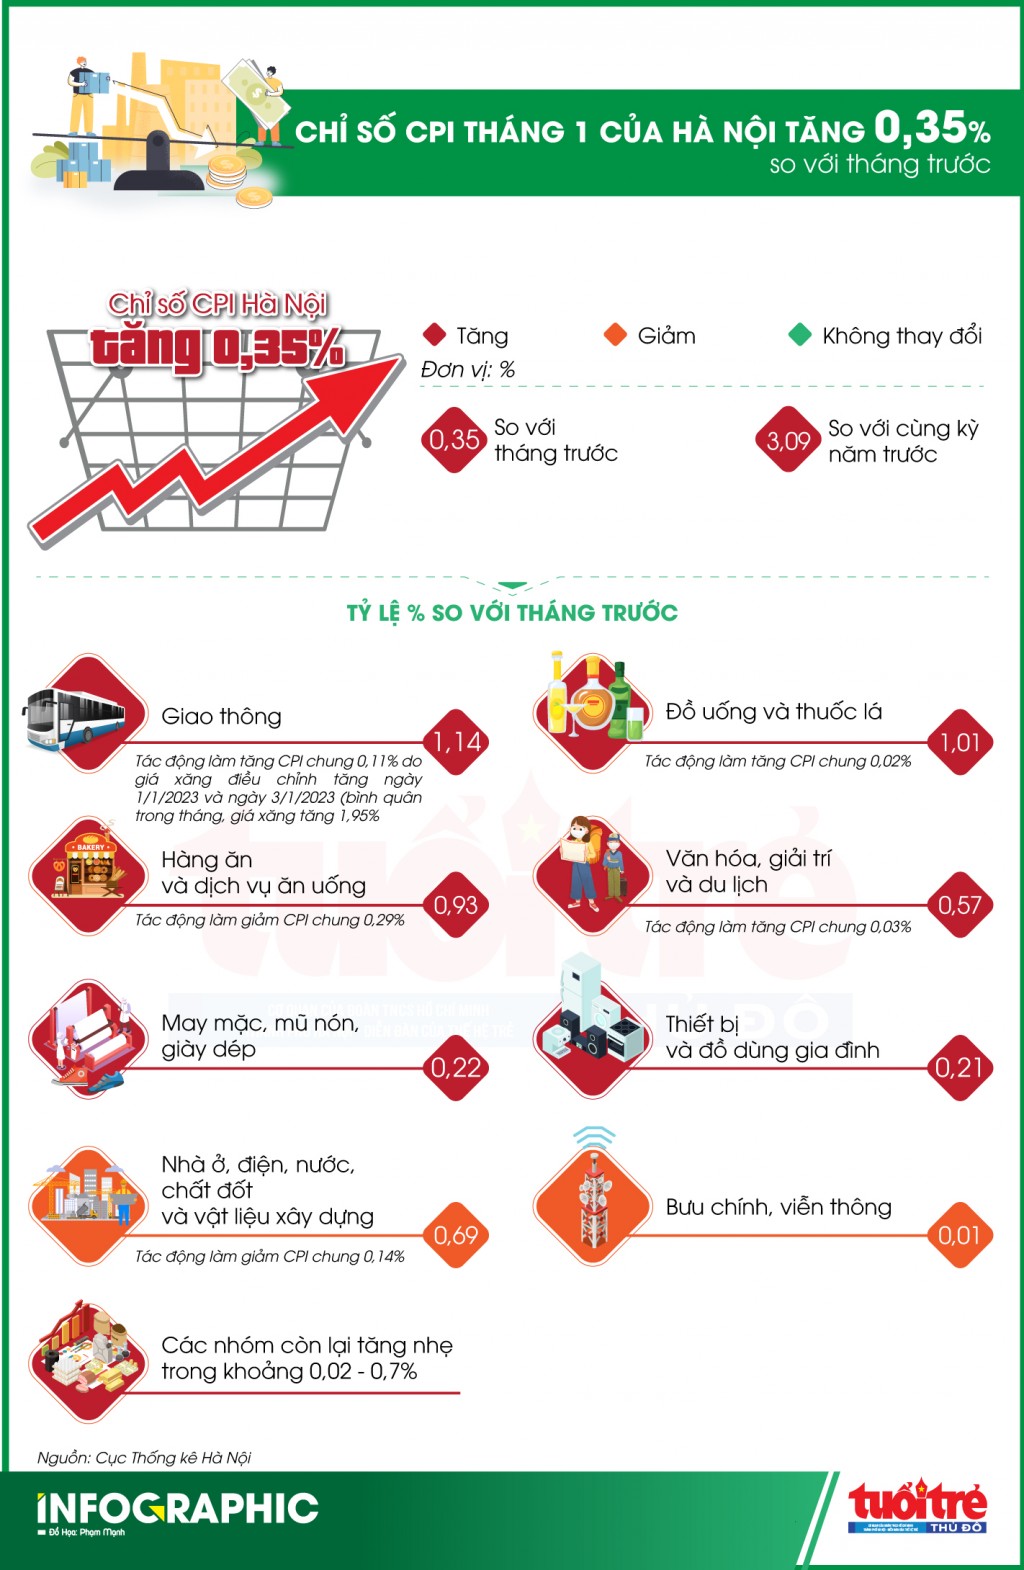 Hà Nội: Chỉ số giá tiêu dùng tháng 1 tăng 0,35% so với tháng trước